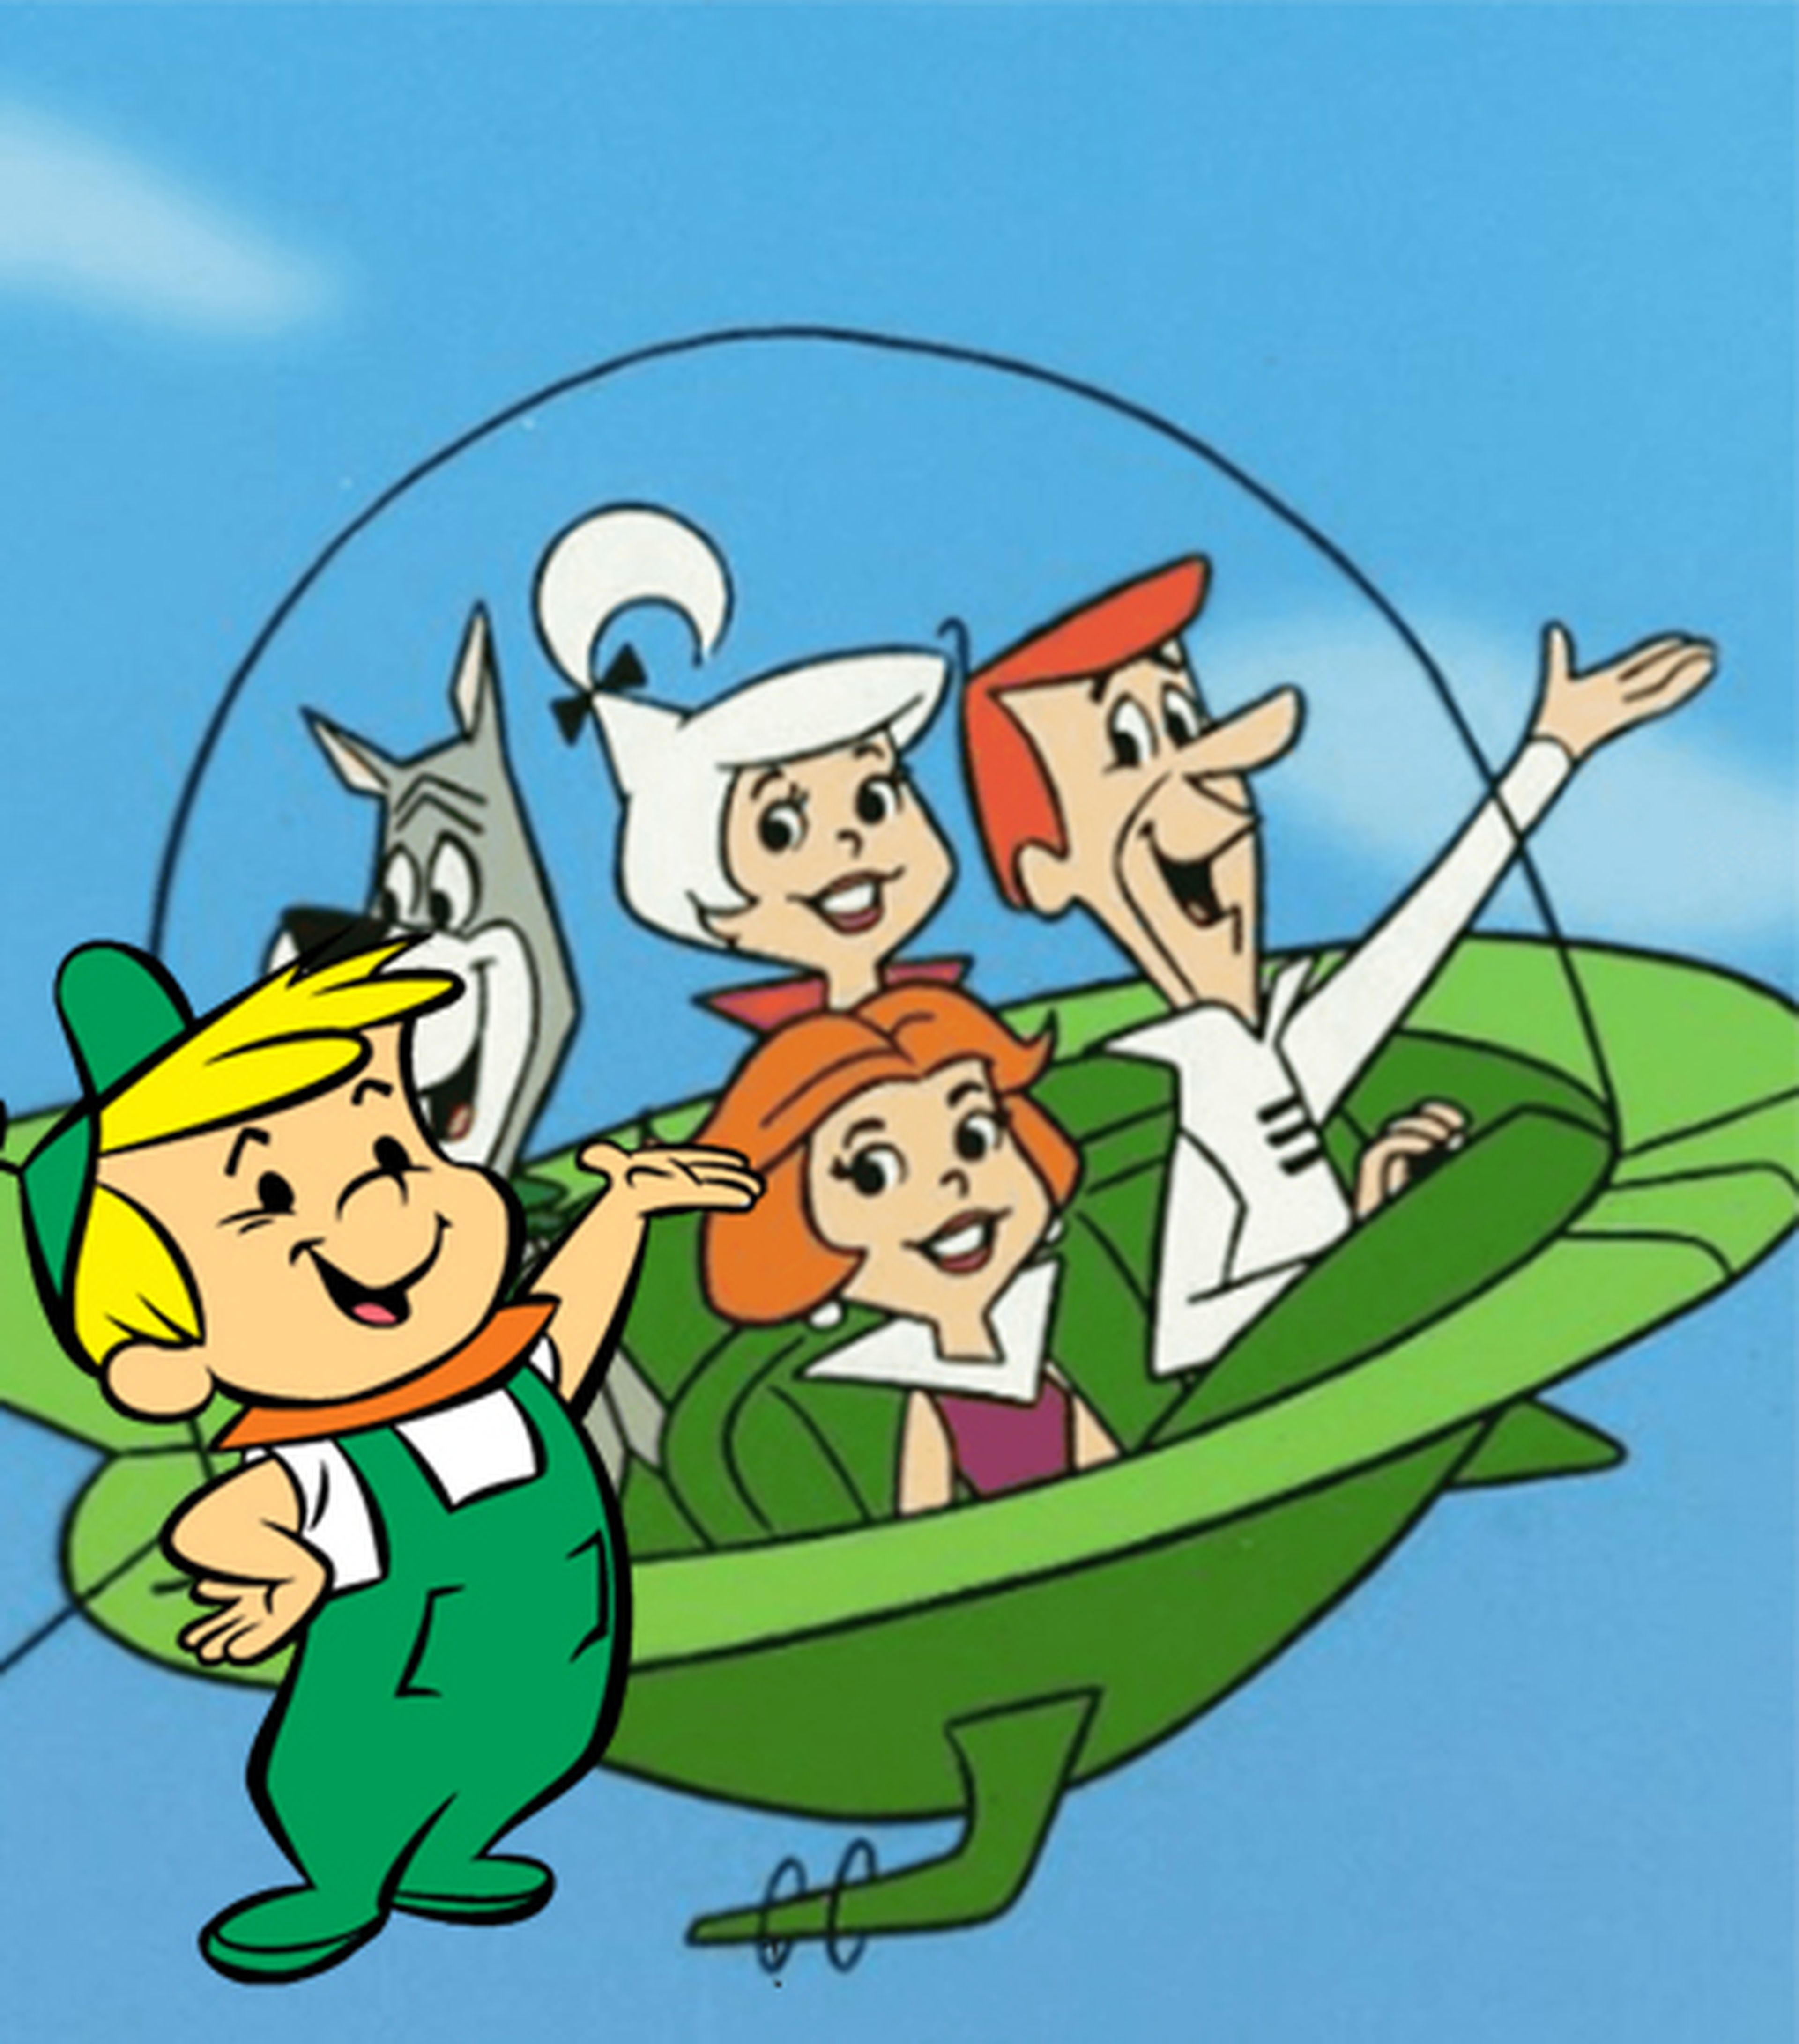 Elroy a la izquierda de la imagen, personaje de la serie de dibujos animados Los Supersónicos.